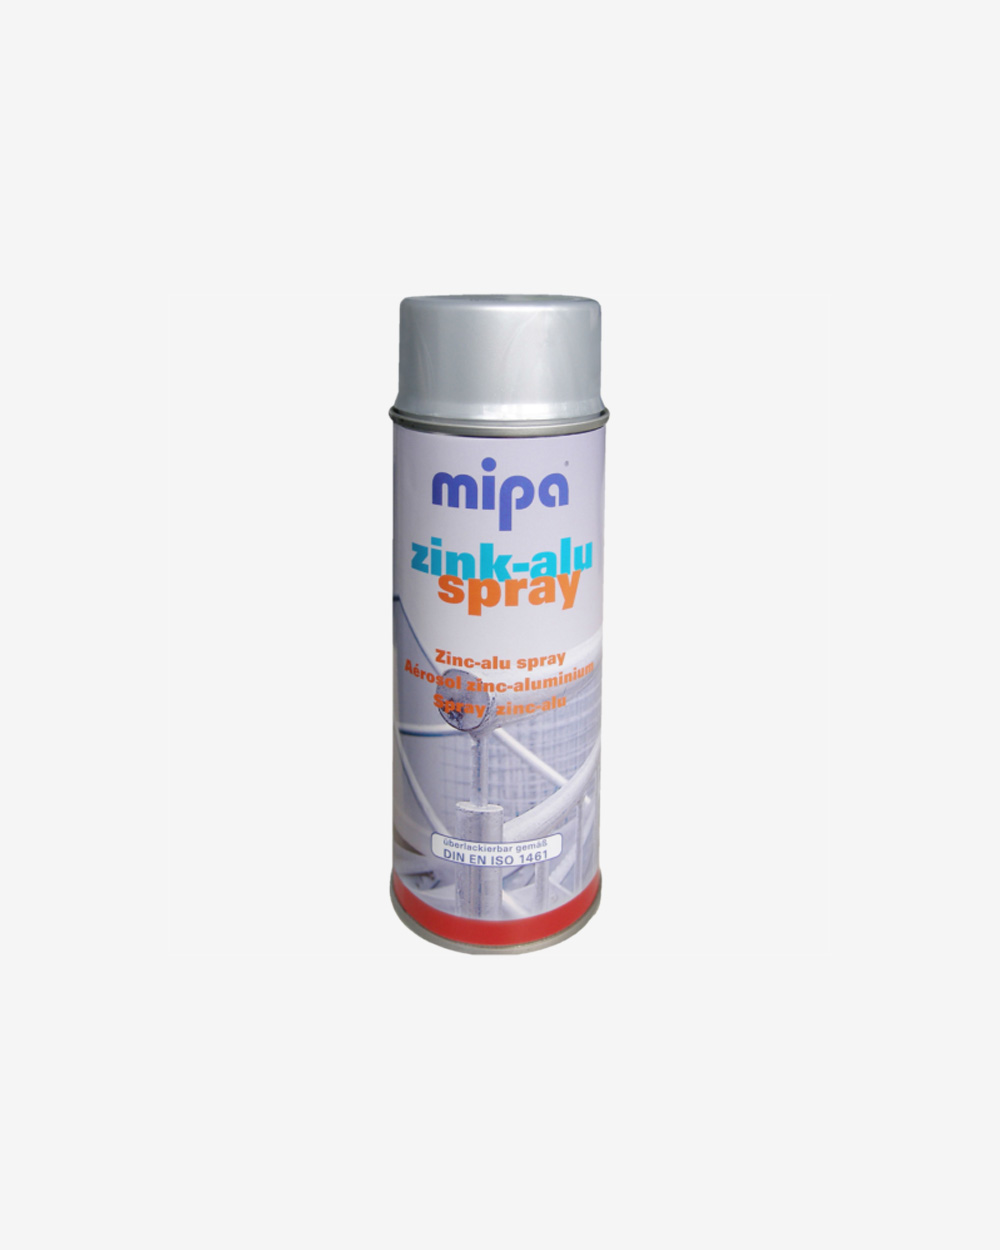 Mipa Zink-Alu Spray